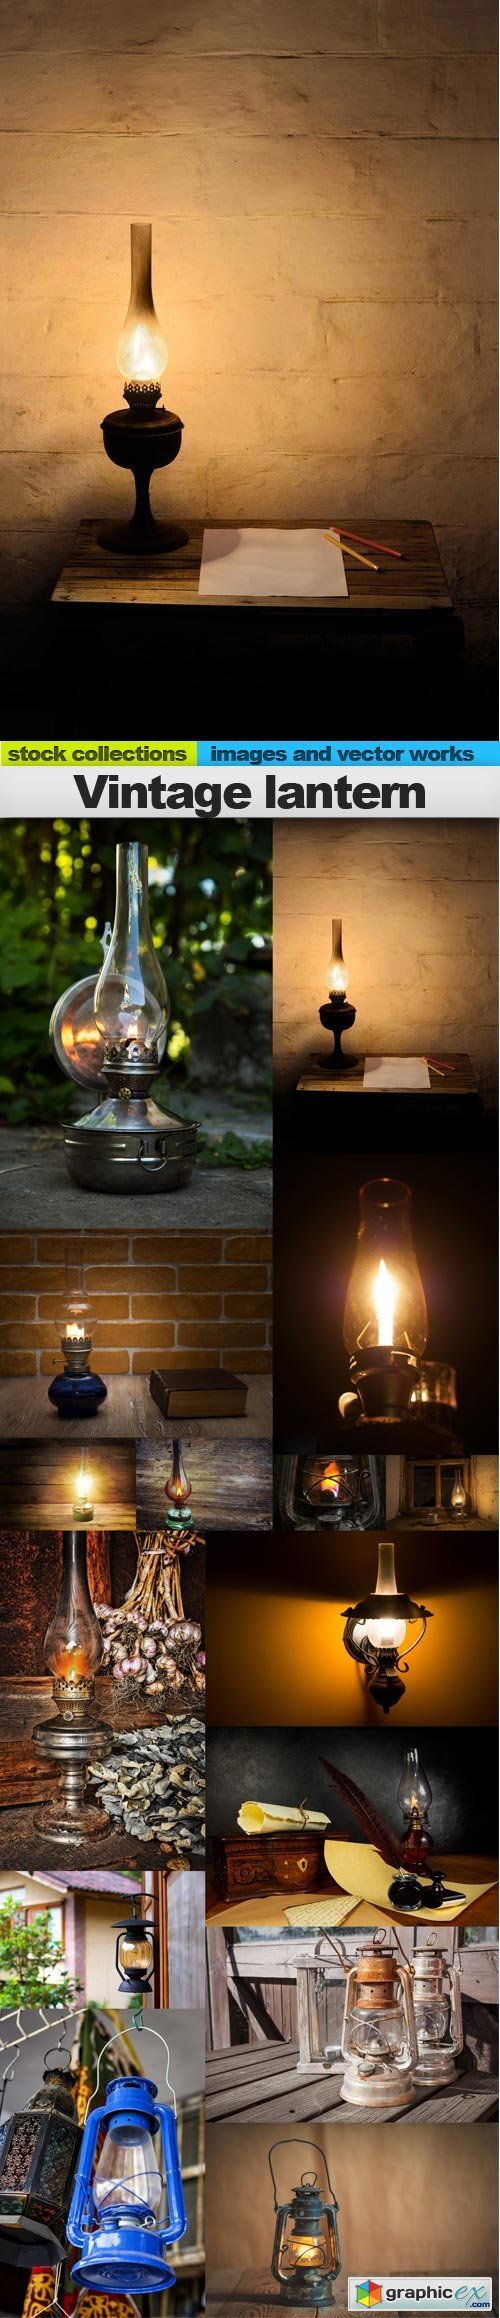 Vintage lantern, 15 x UHQ JPEG